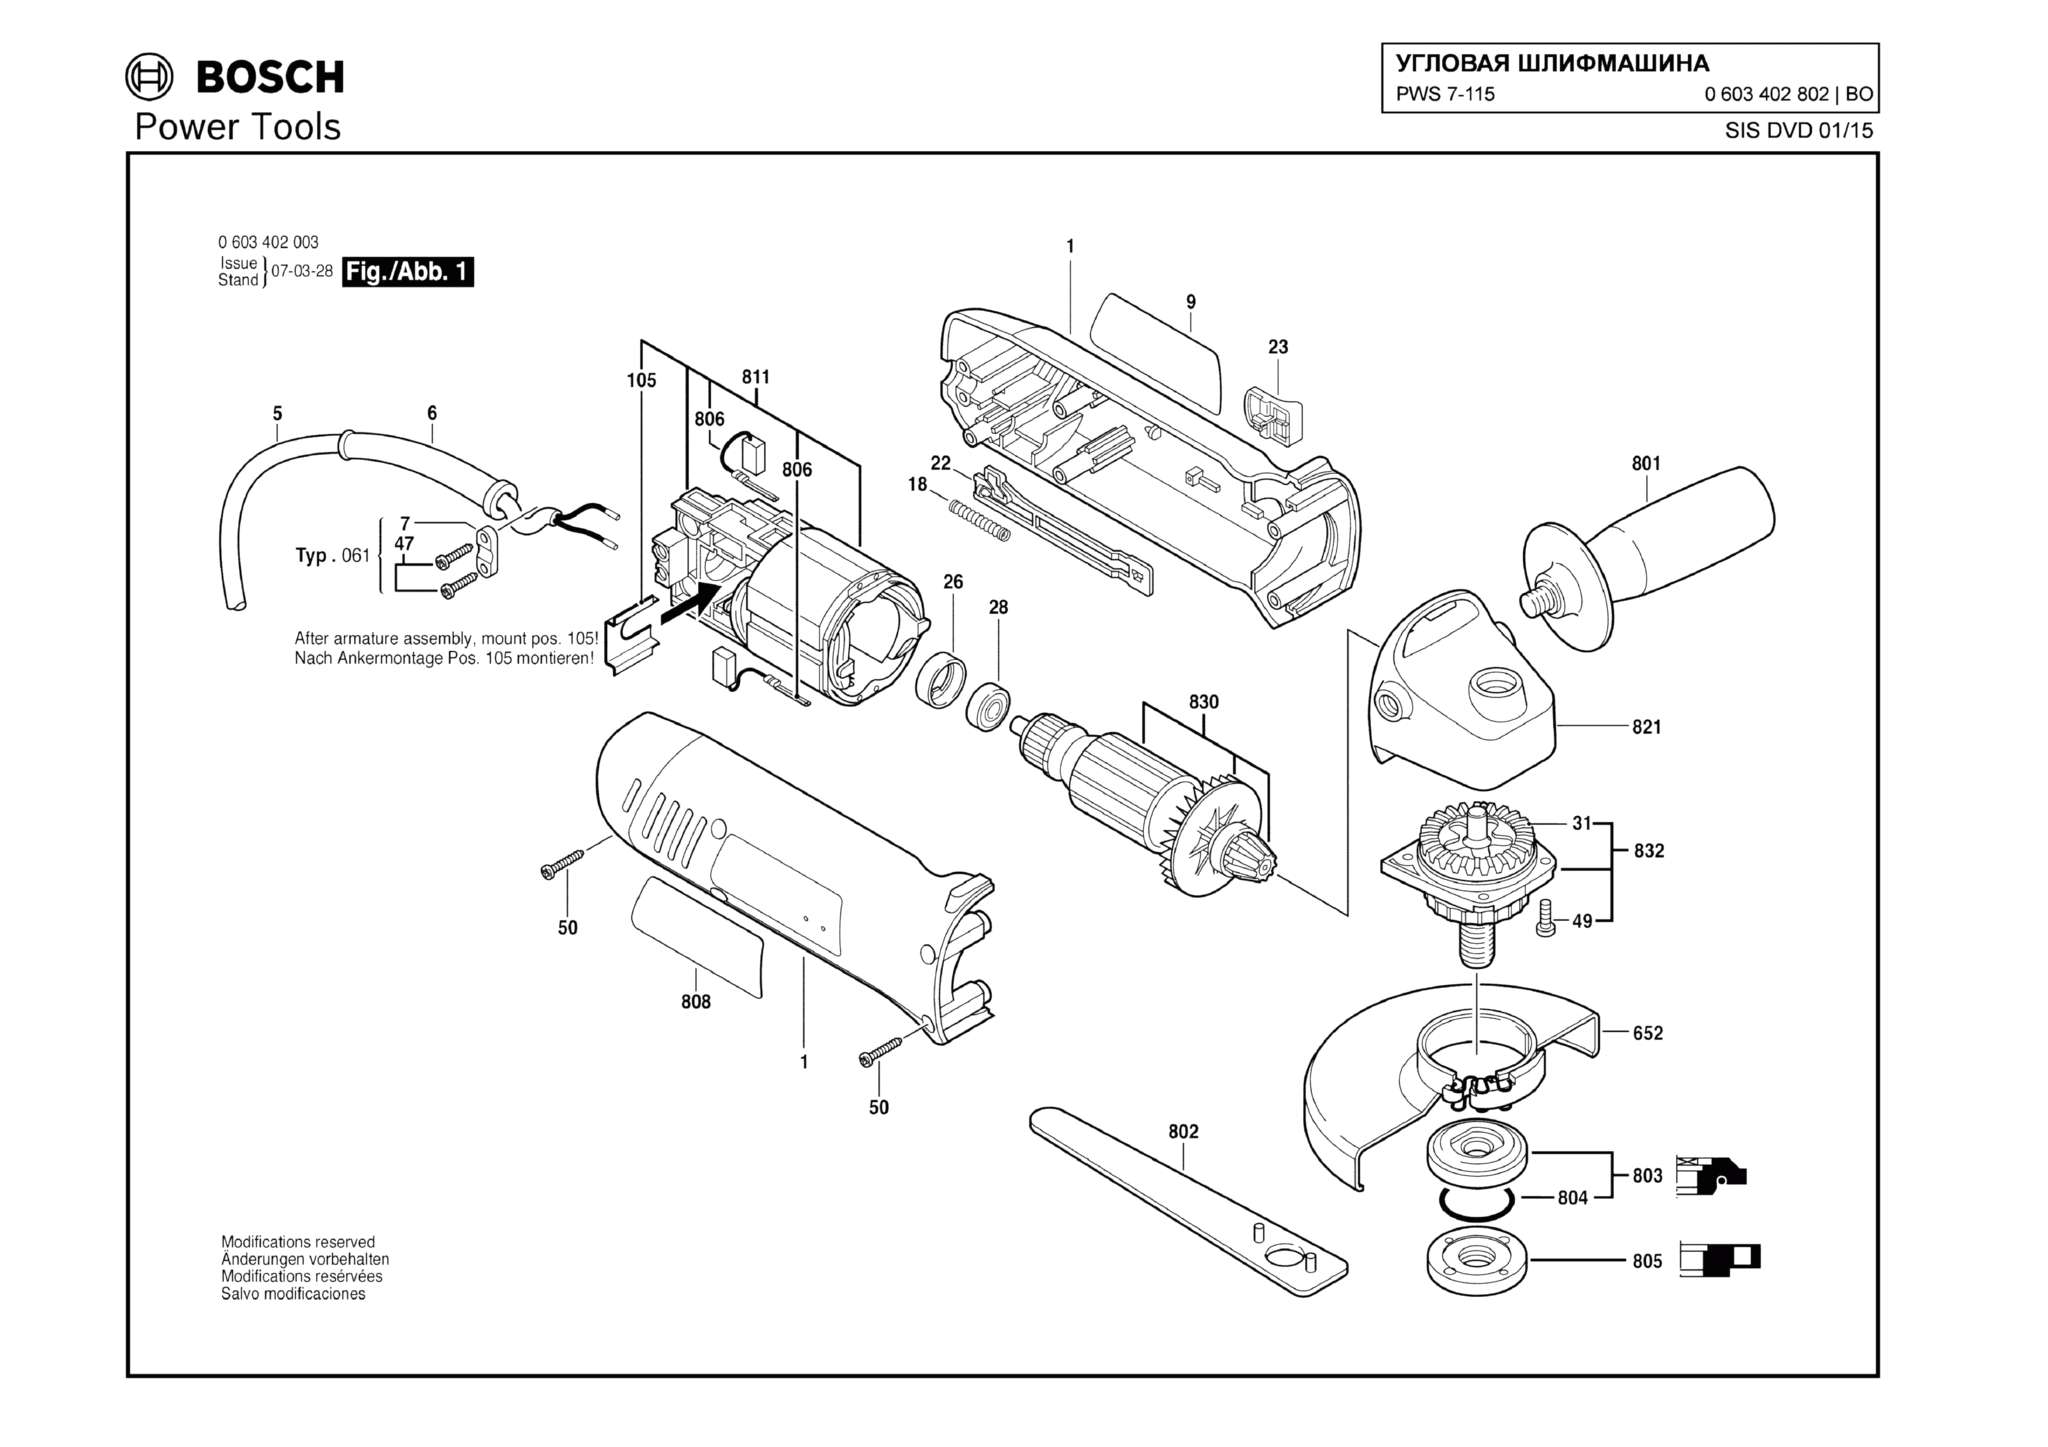 Запчасти, схема и деталировка Bosch PWS 7-115 (ТИП 0603402802)